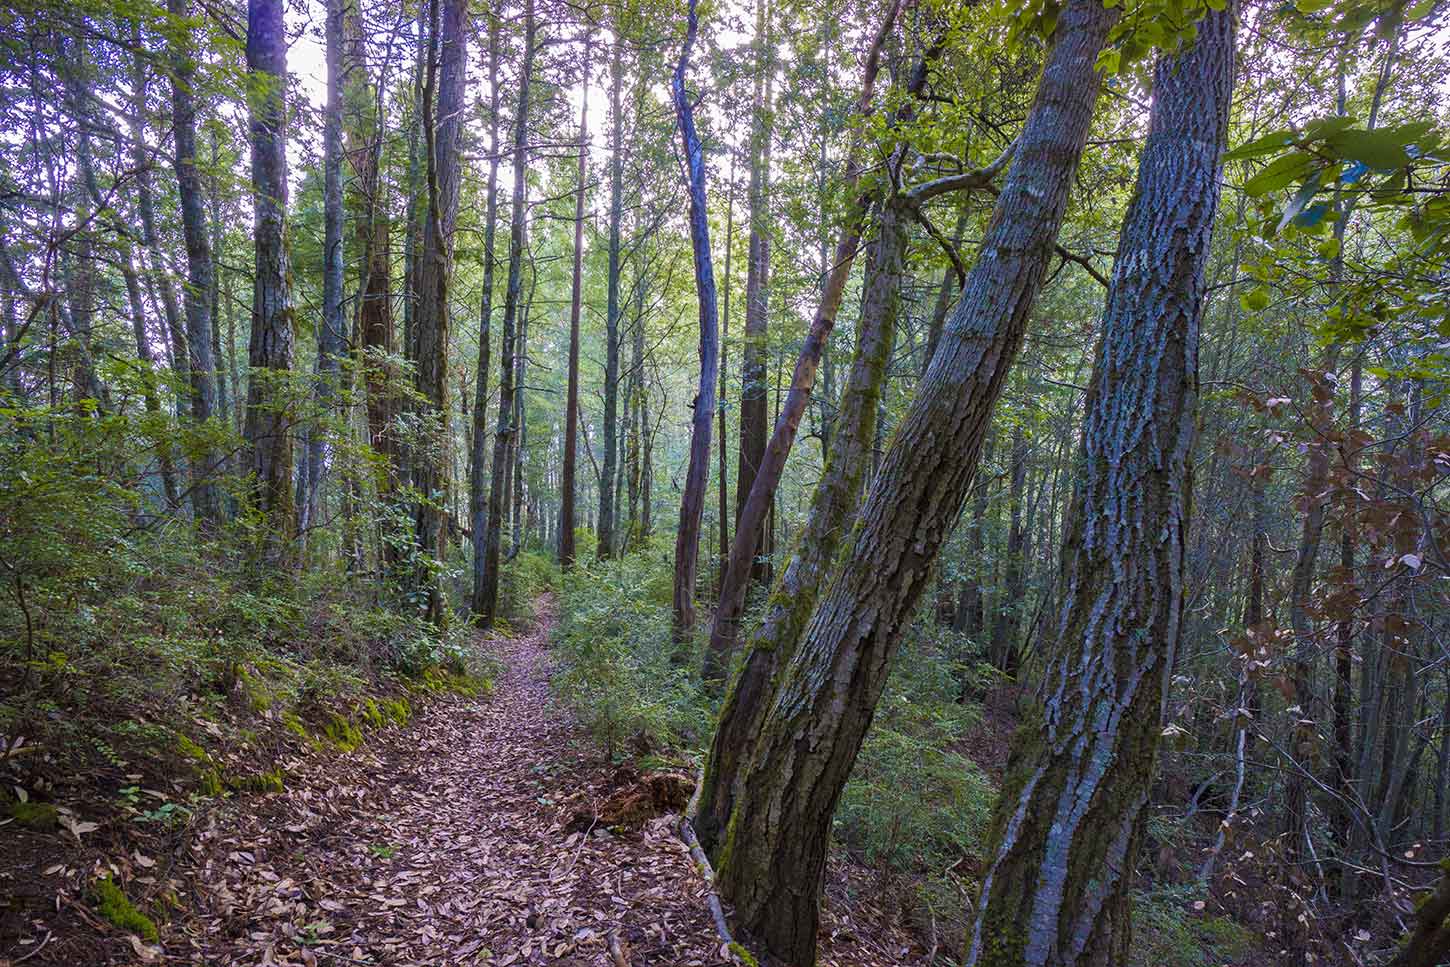 The Butano Ridge Trail in Pescadero Creek County Park